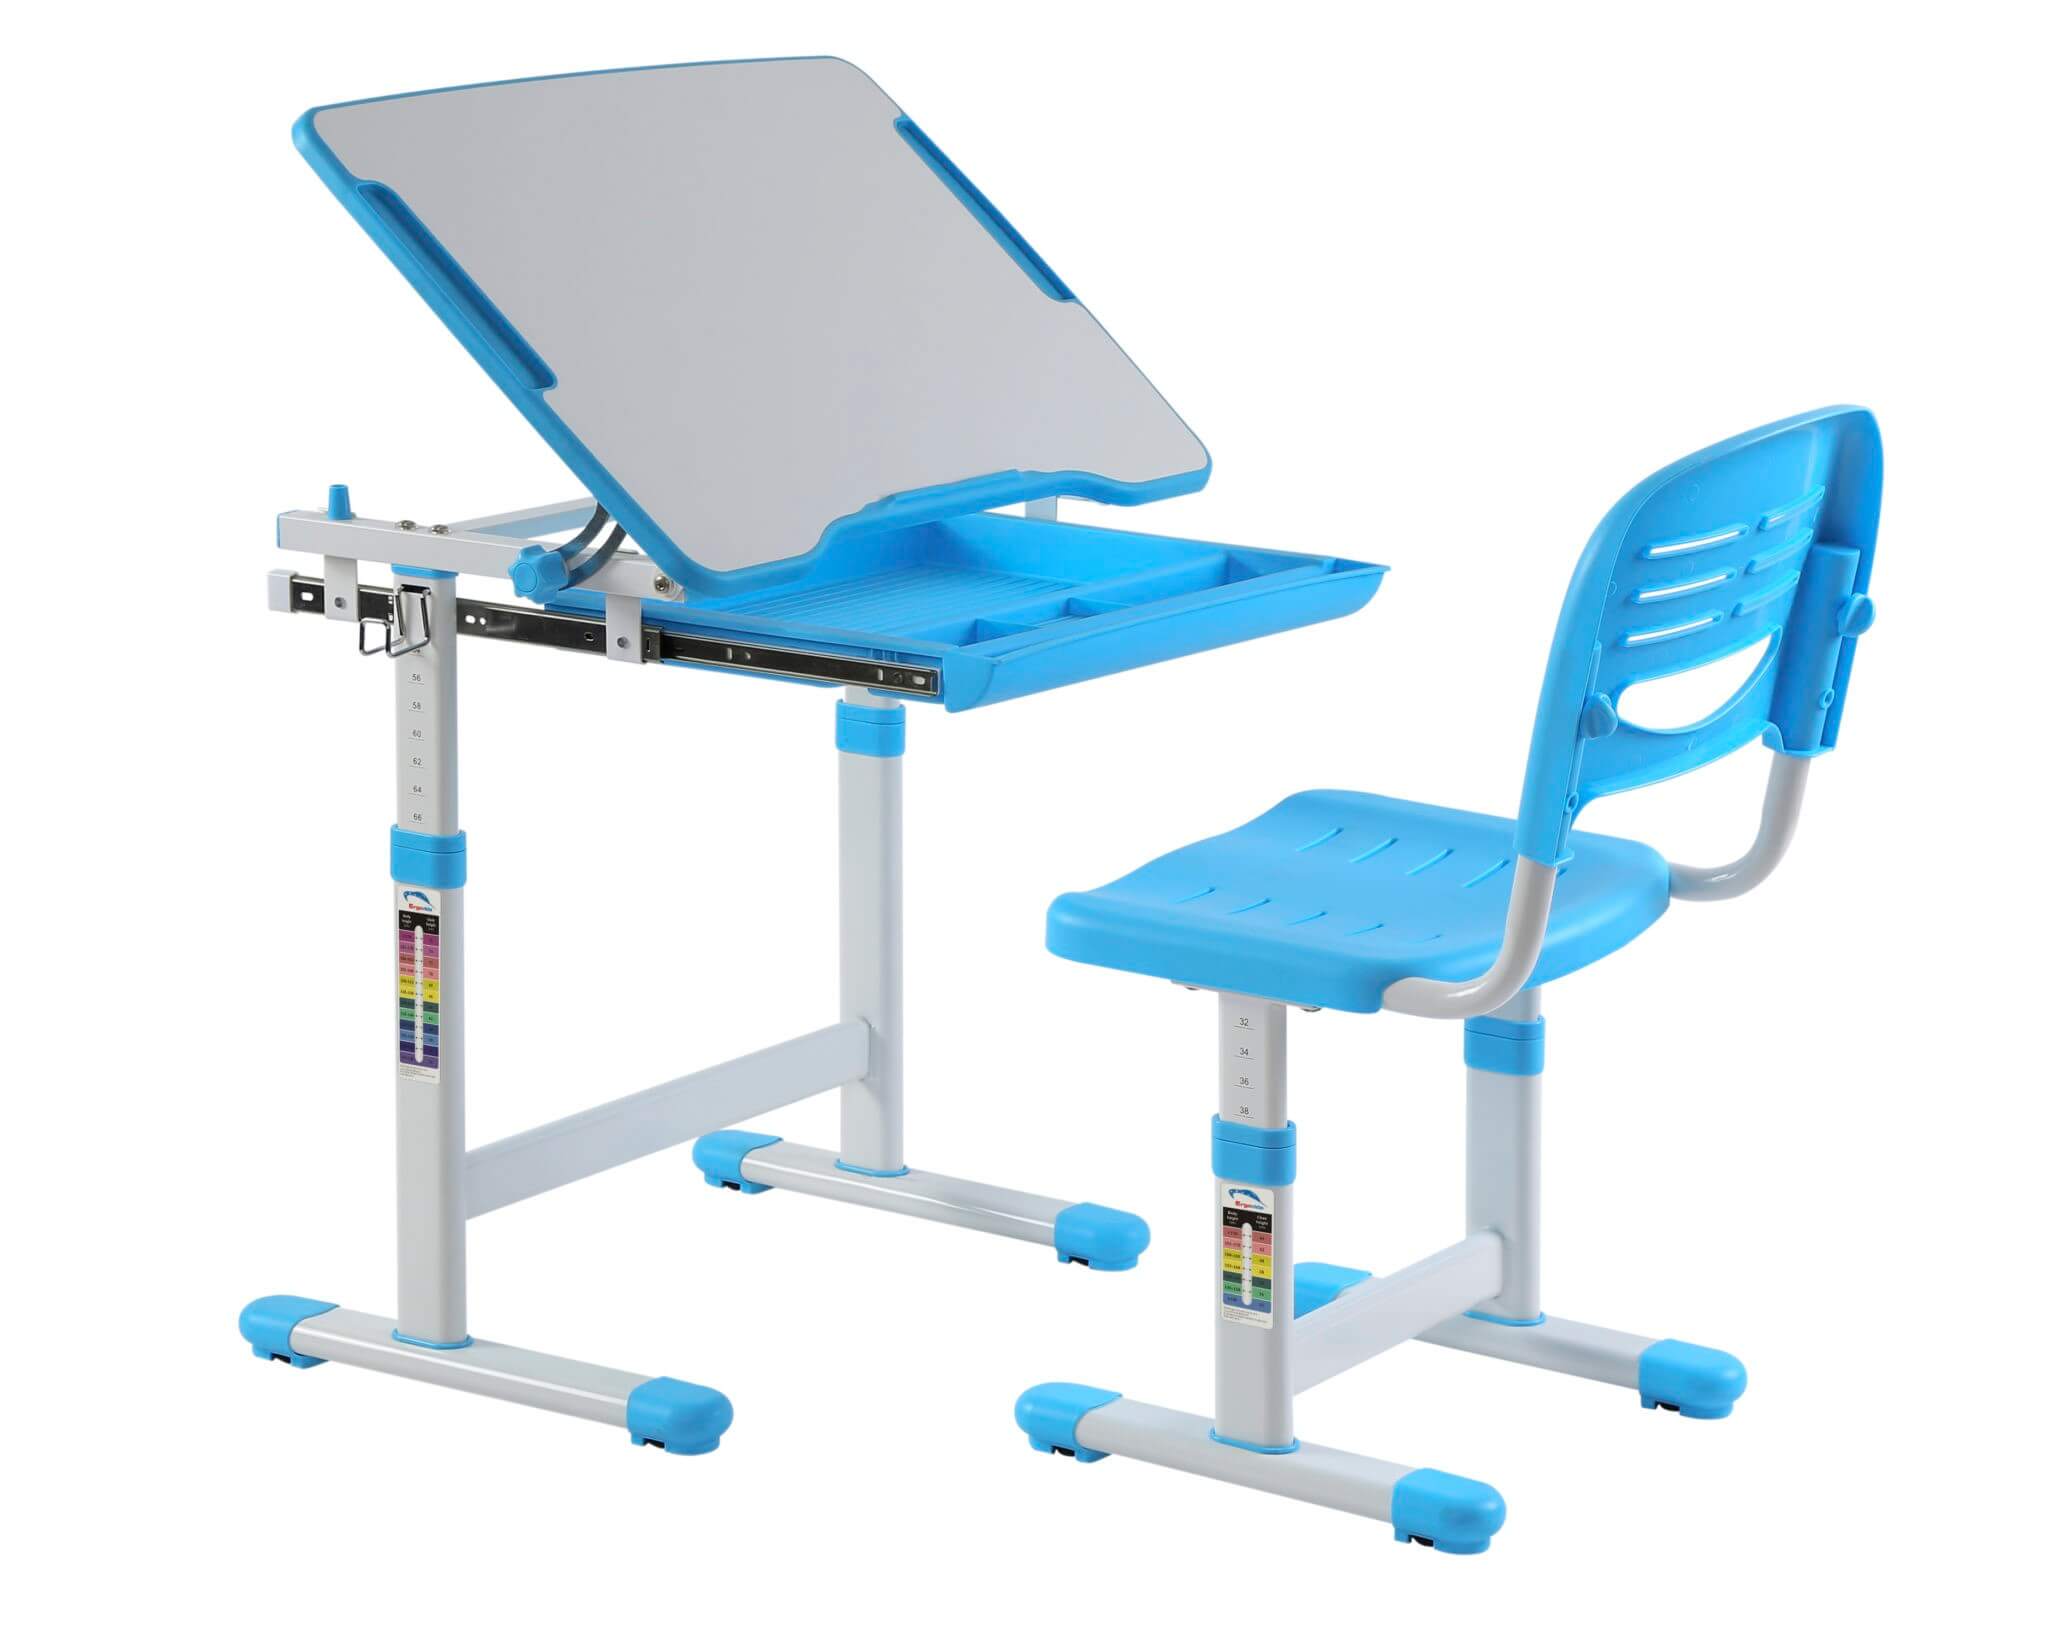 Set birou si scaun copii ergonomic reglabil in inaltime ErgoK SOL Albastru-Protecție Pardosea CADOU!